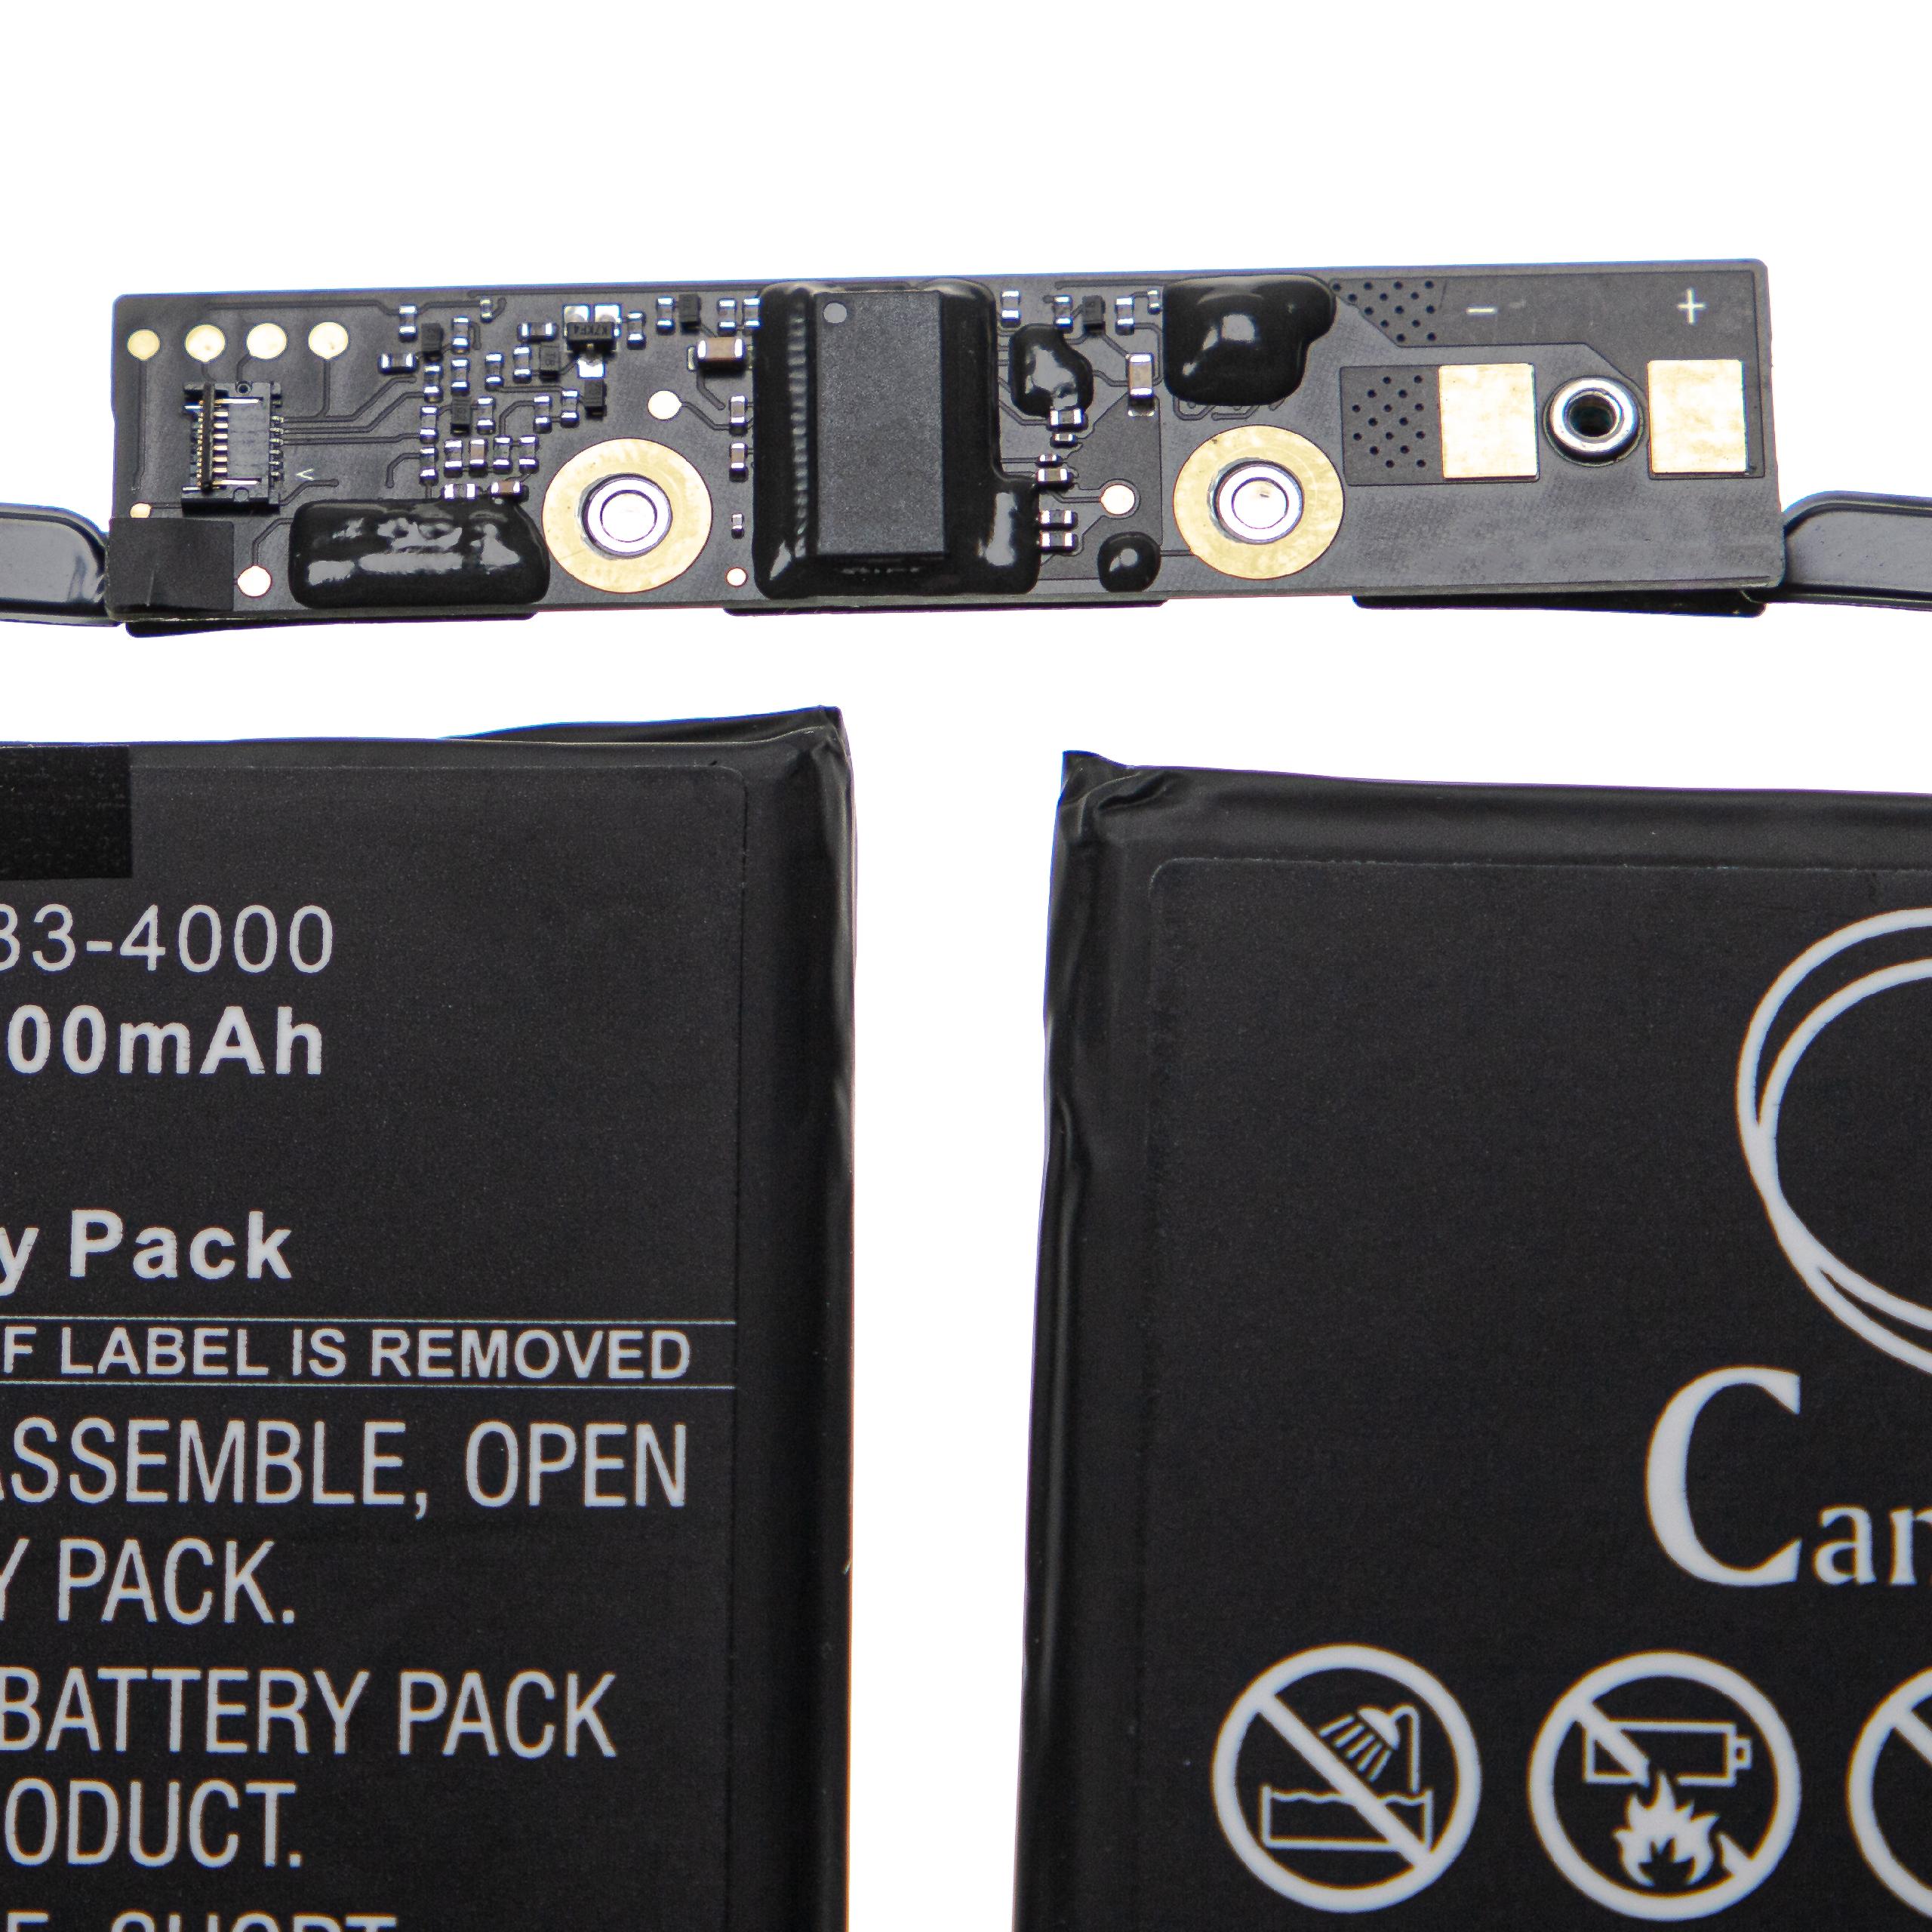 Batterie remplace Apple 020-02391, 080-333-4000 pour ordinateur portable - 7300mAh 11,4V Li-polymère, noir